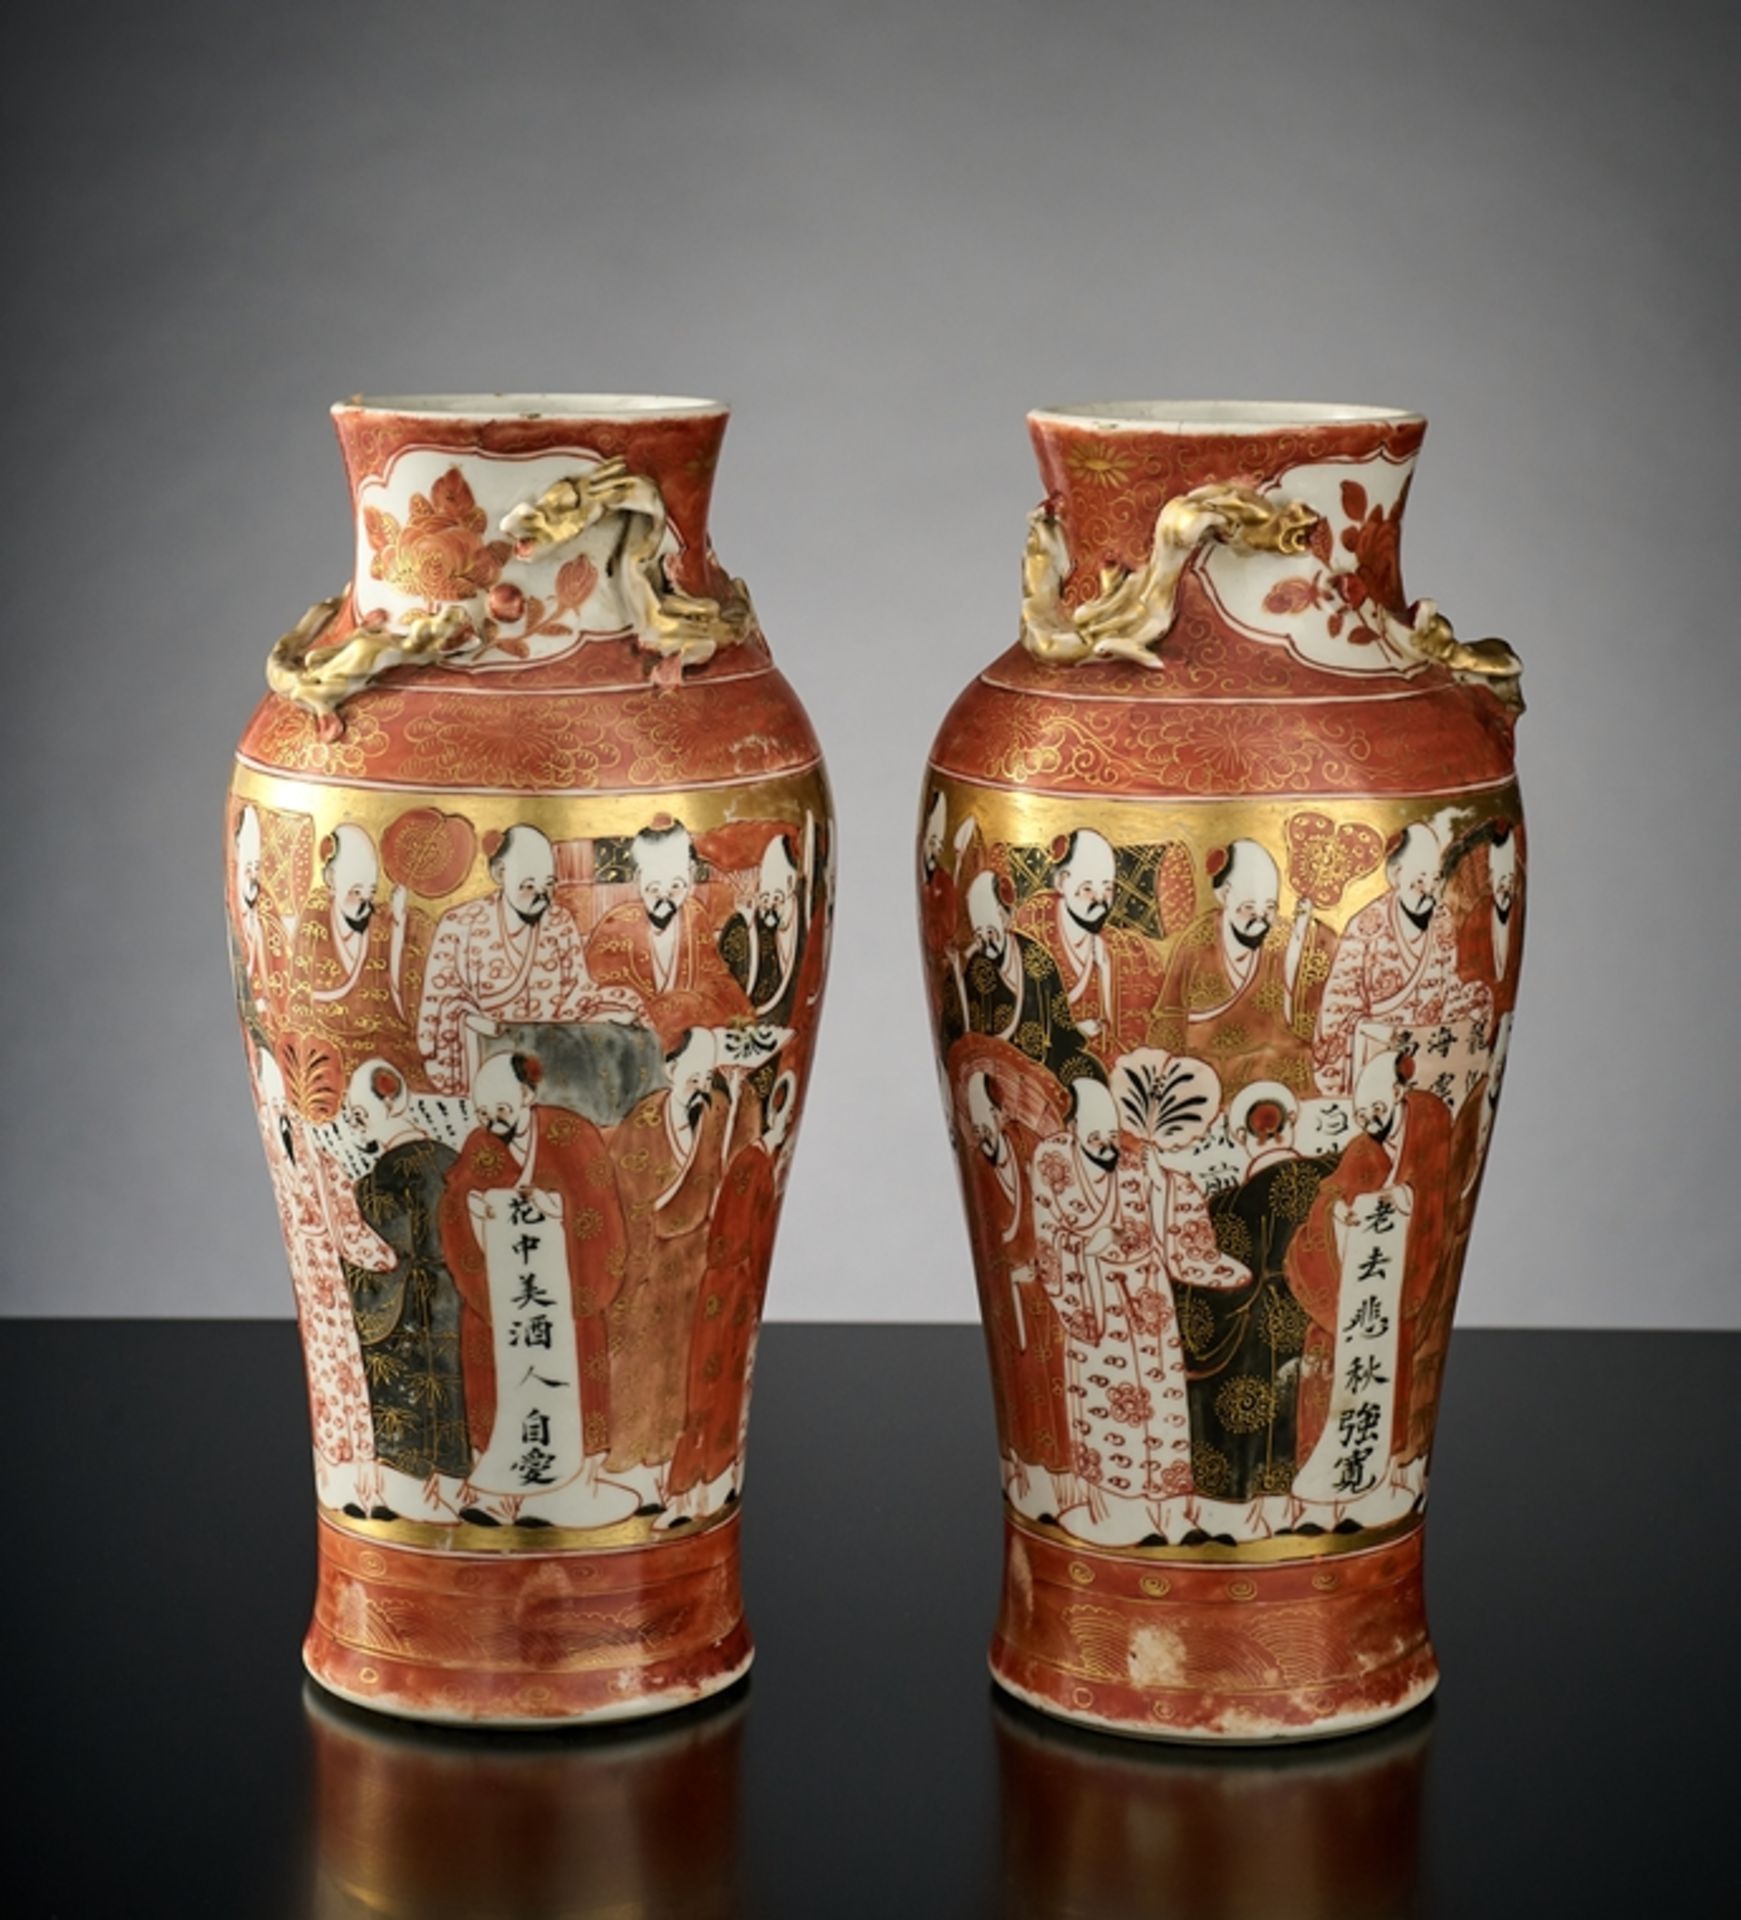 Paar Satsuma-Vasen. Figurenszenen. Shishi-Auflagen. Japan, Ende 19. Jh. H 26 cm